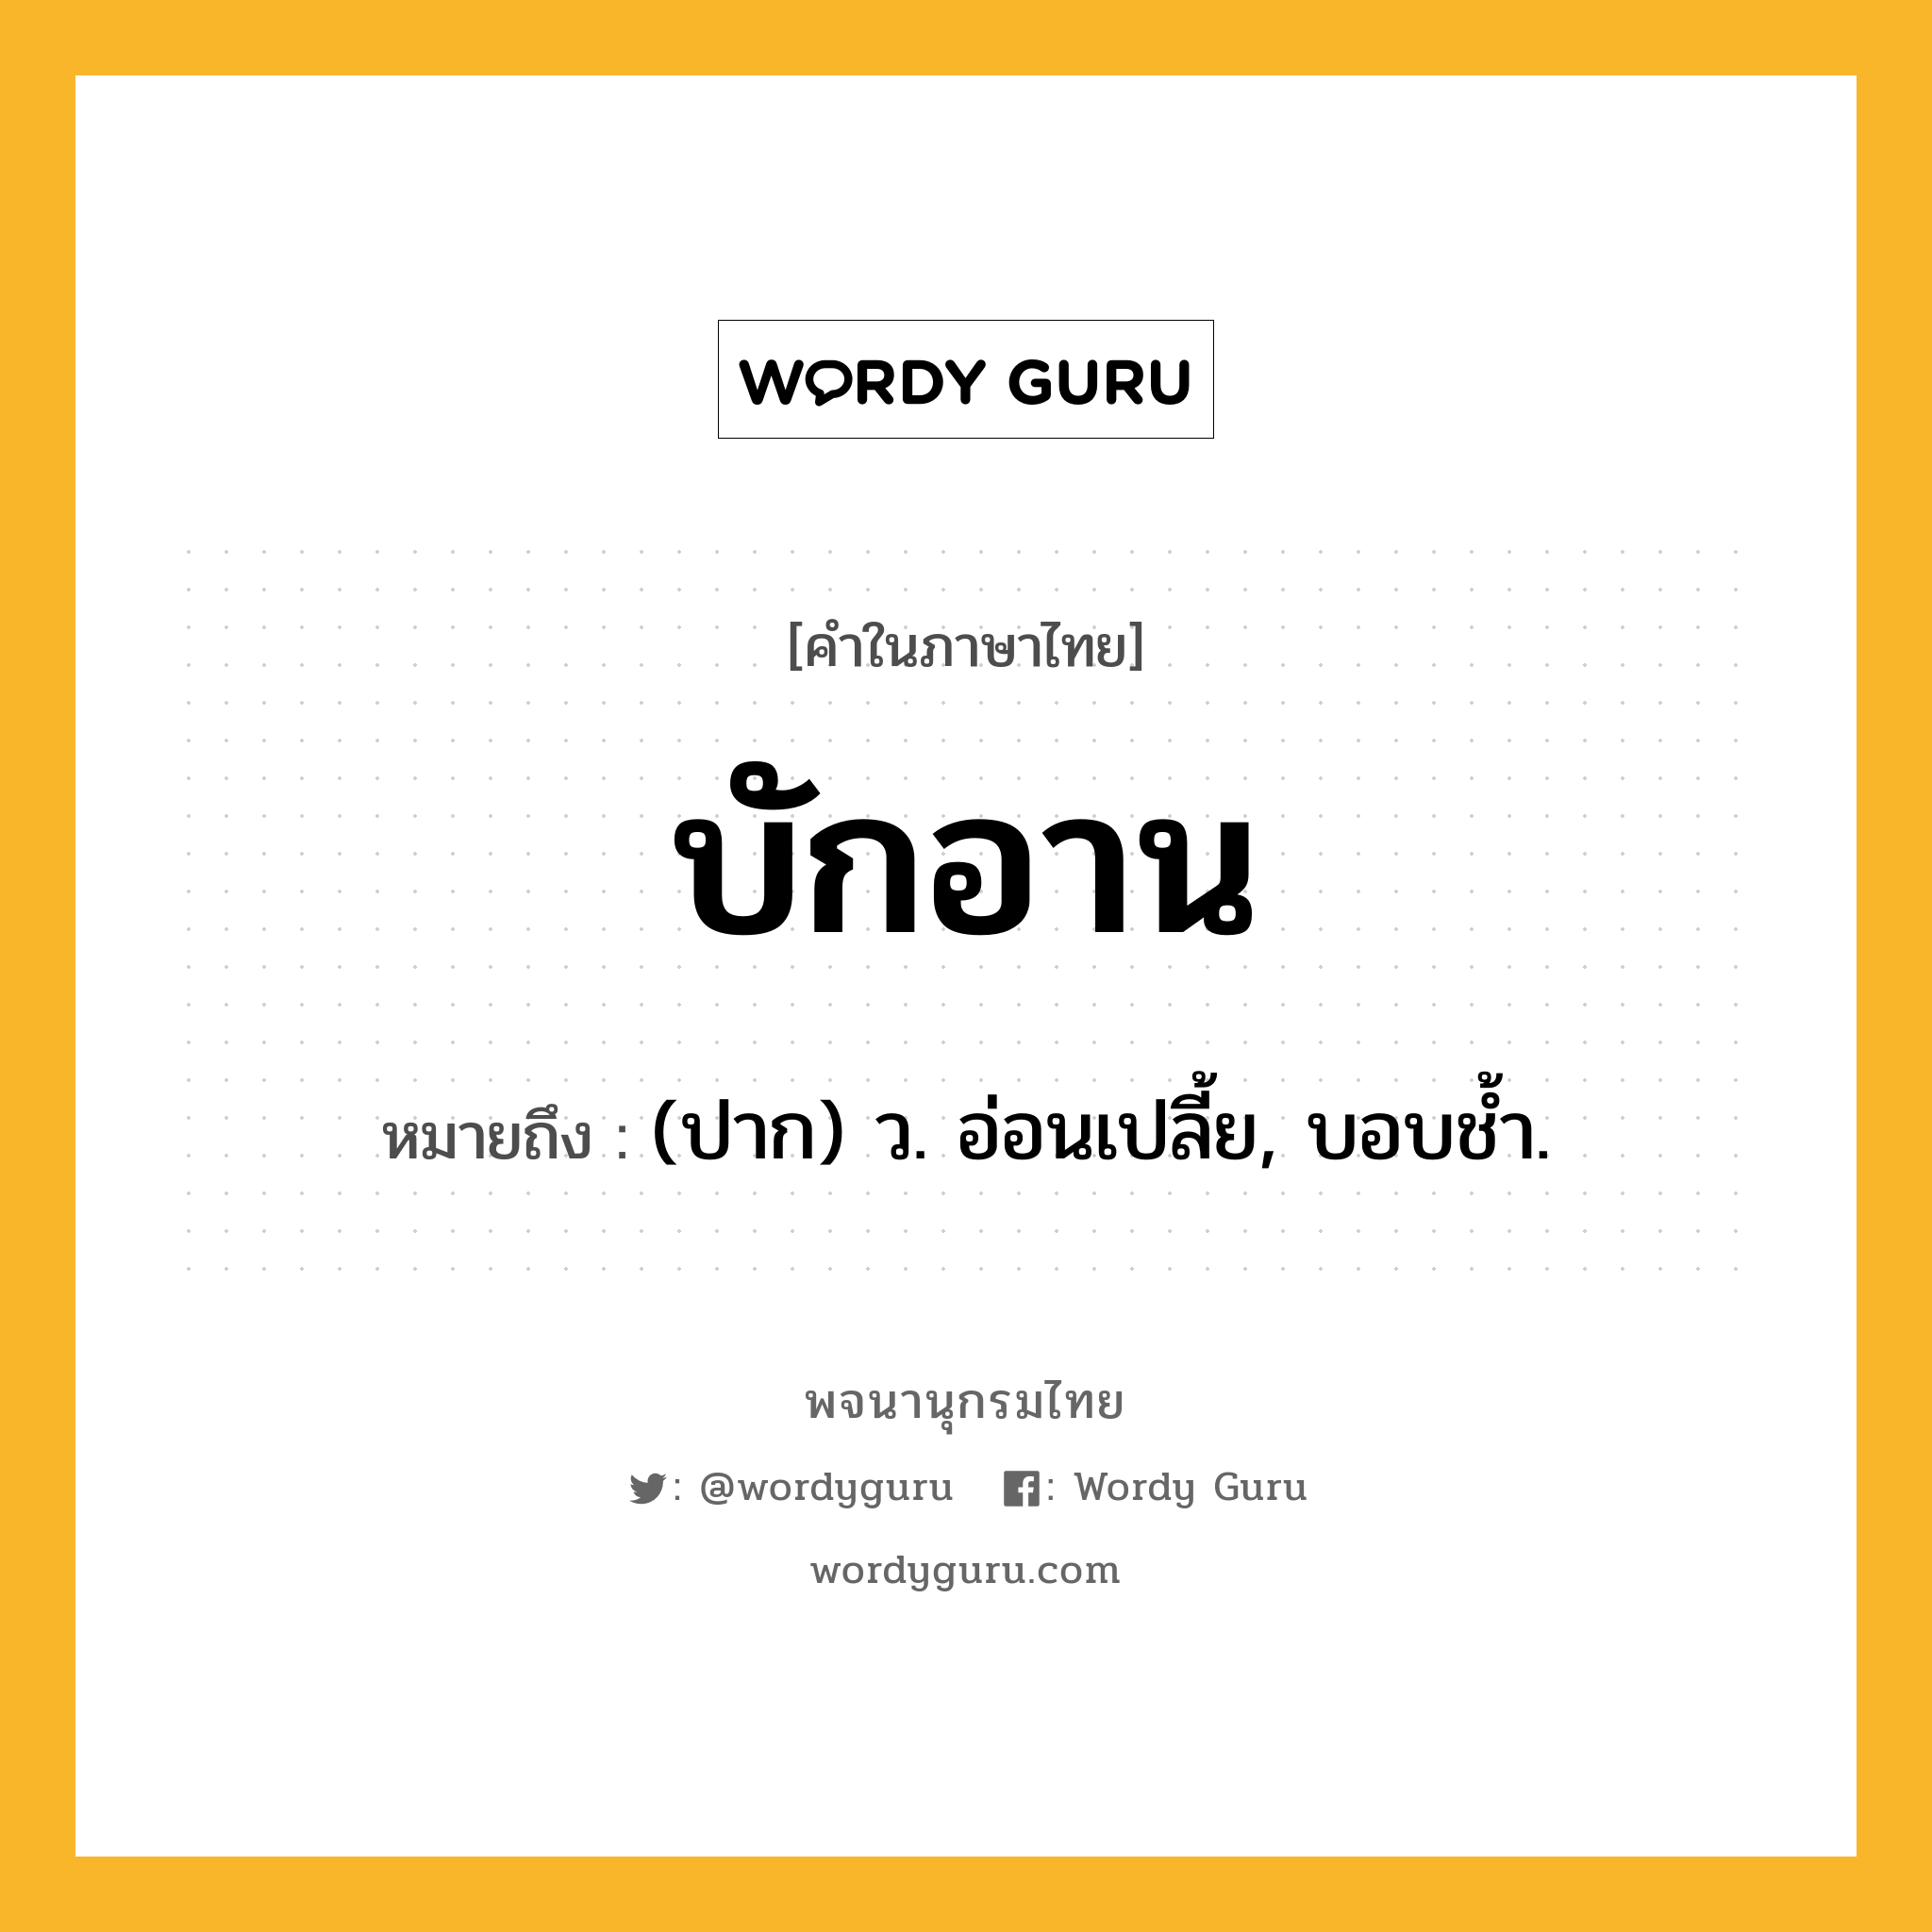 บักอาน หมายถึงอะไร?, คำในภาษาไทย บักอาน หมายถึง (ปาก) ว. อ่อนเปลี้ย, บอบชํ้า.